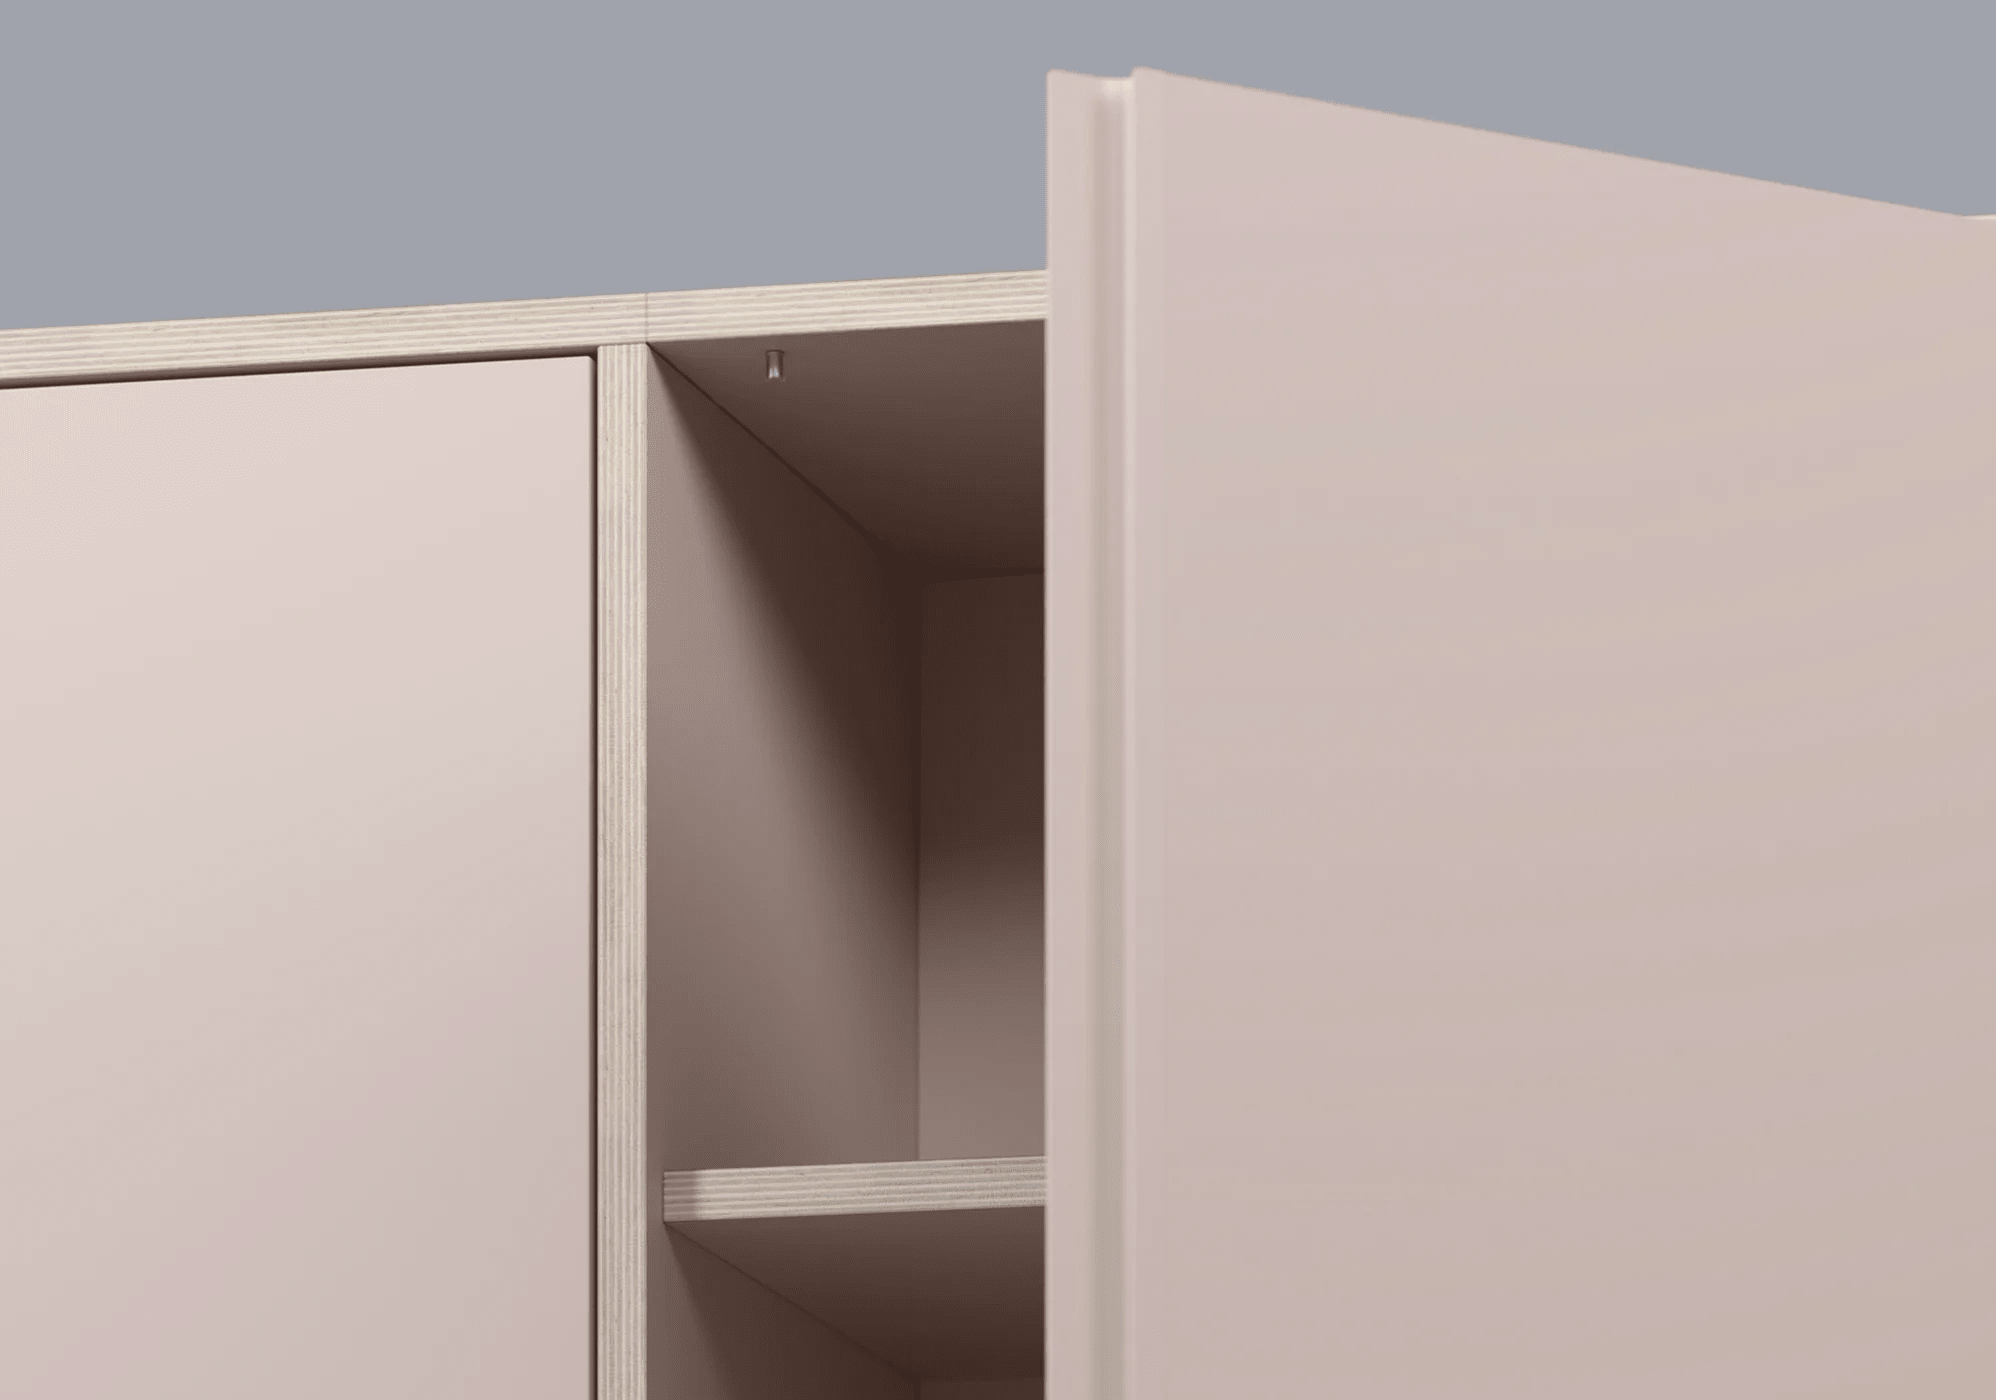 Hoches Puderrosa Multiplexplatte Sideboard mit Türen, Schubladen und Ruckwanden multiplexplatten - 116x143x32cm 5